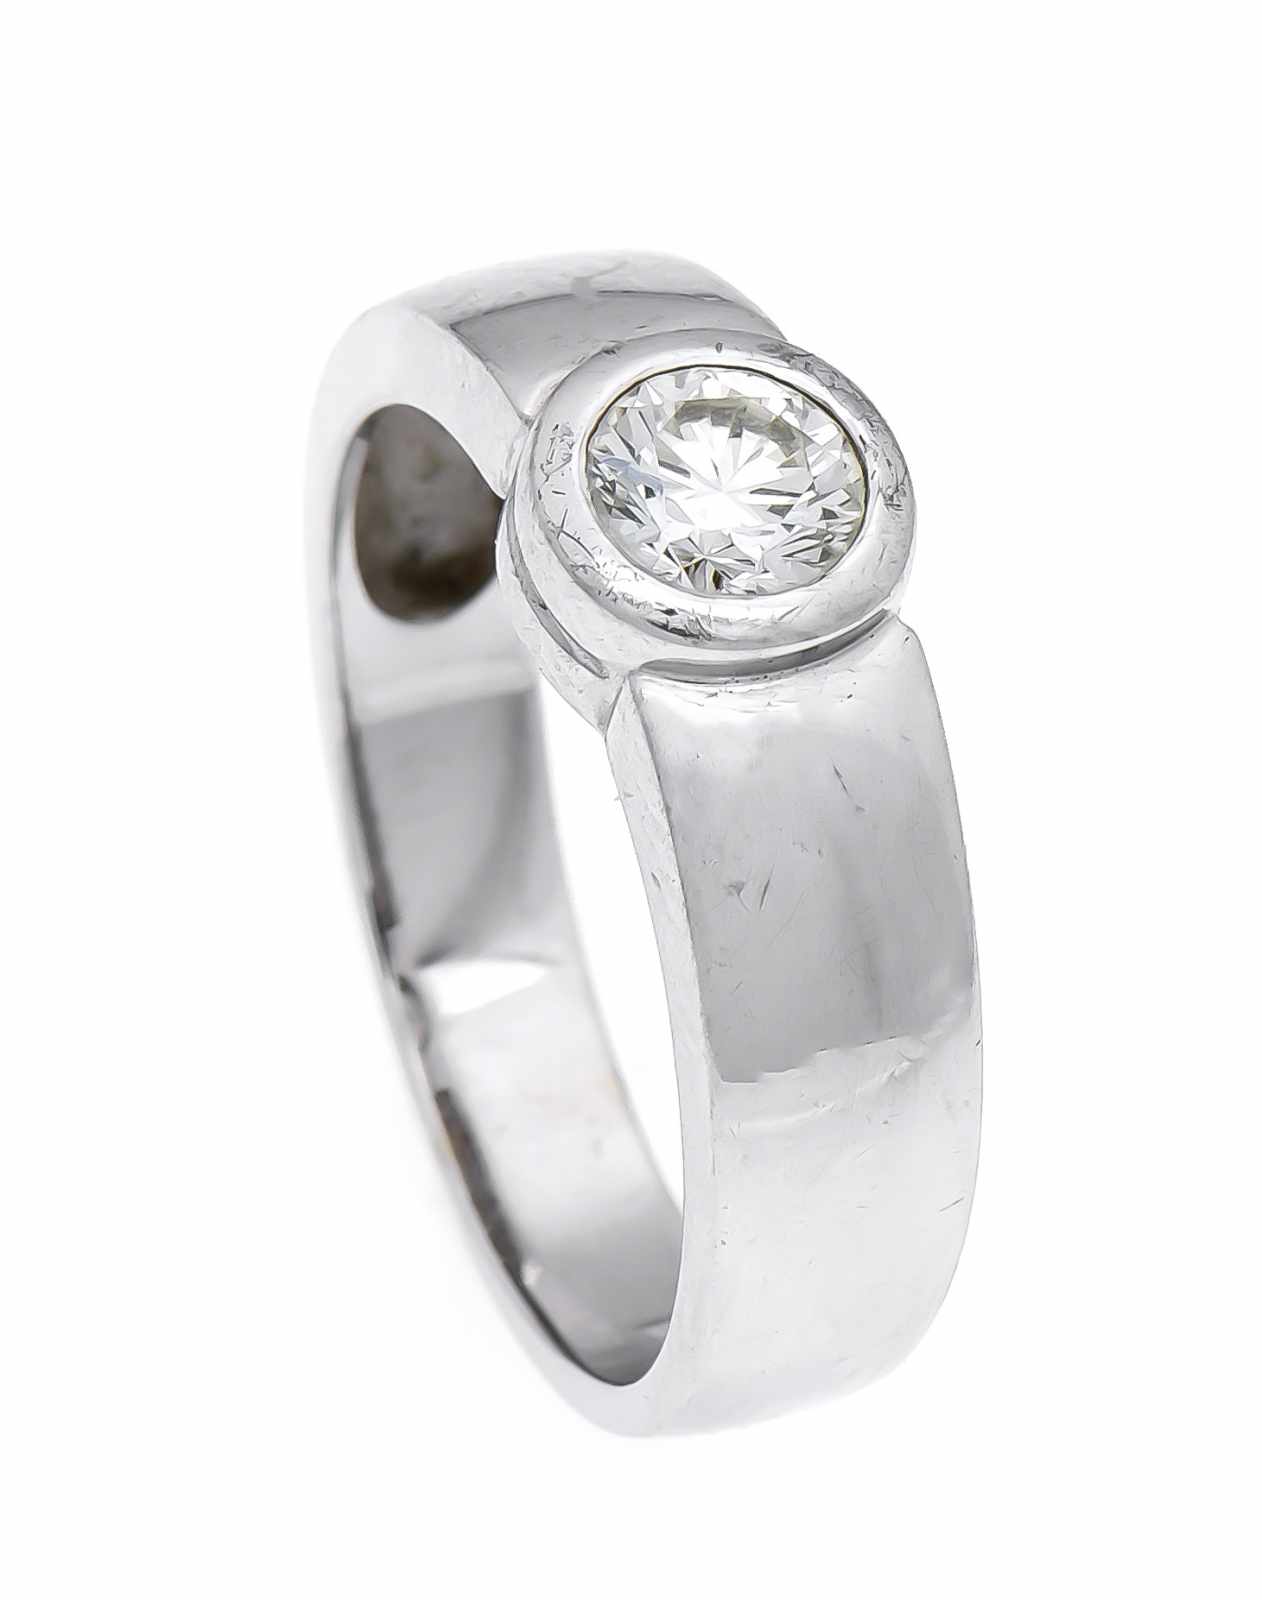 Brillant-Ring WG 585/000 mit einem Brillanten 0,50 ct get.W/lupenrein, RG 58, 6,0 g